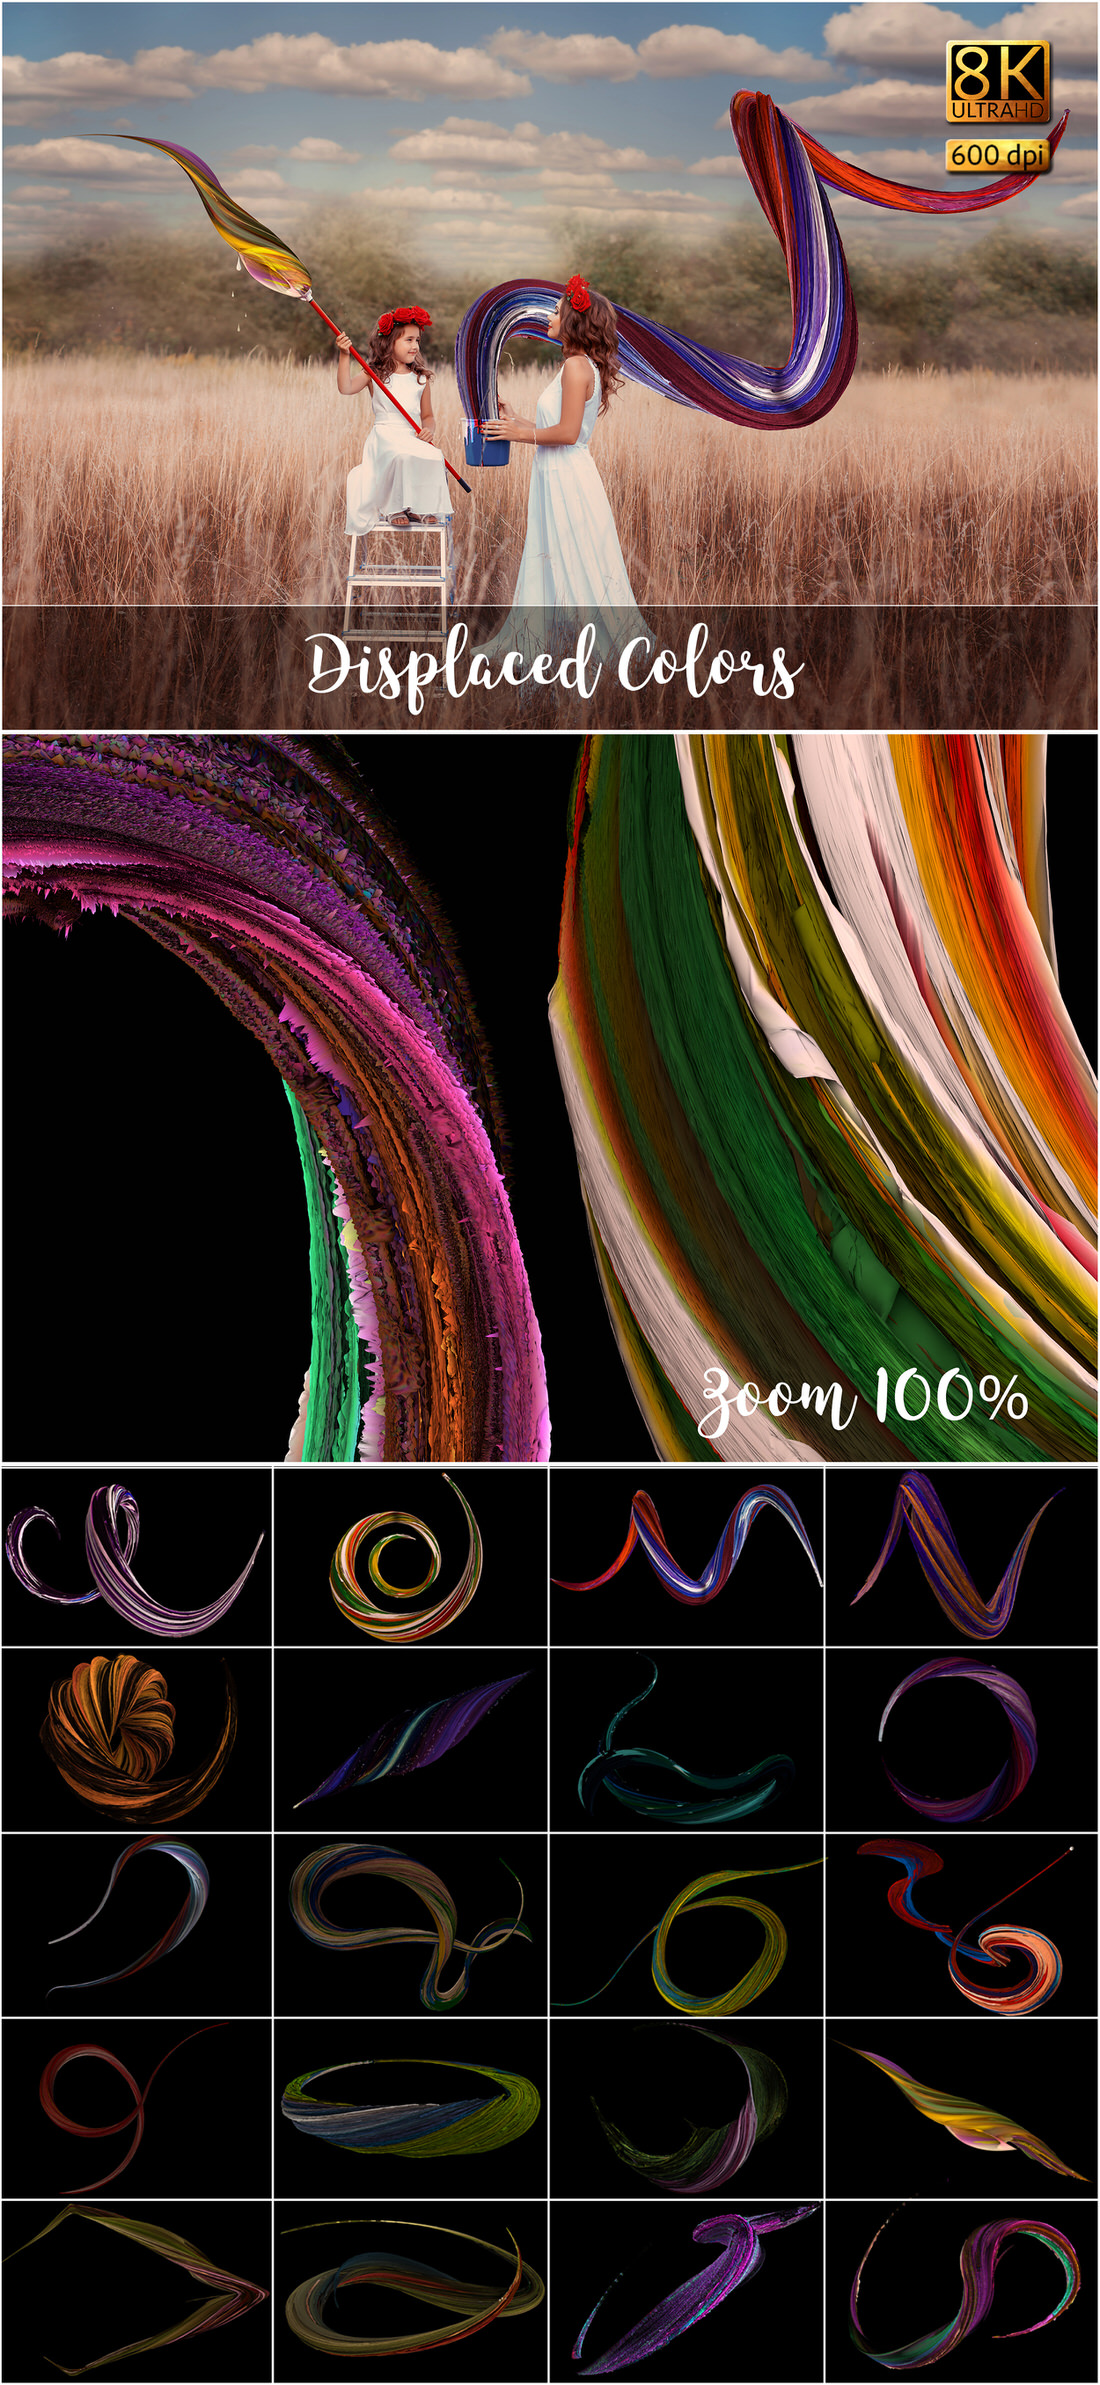 Displaced Colors.jpg